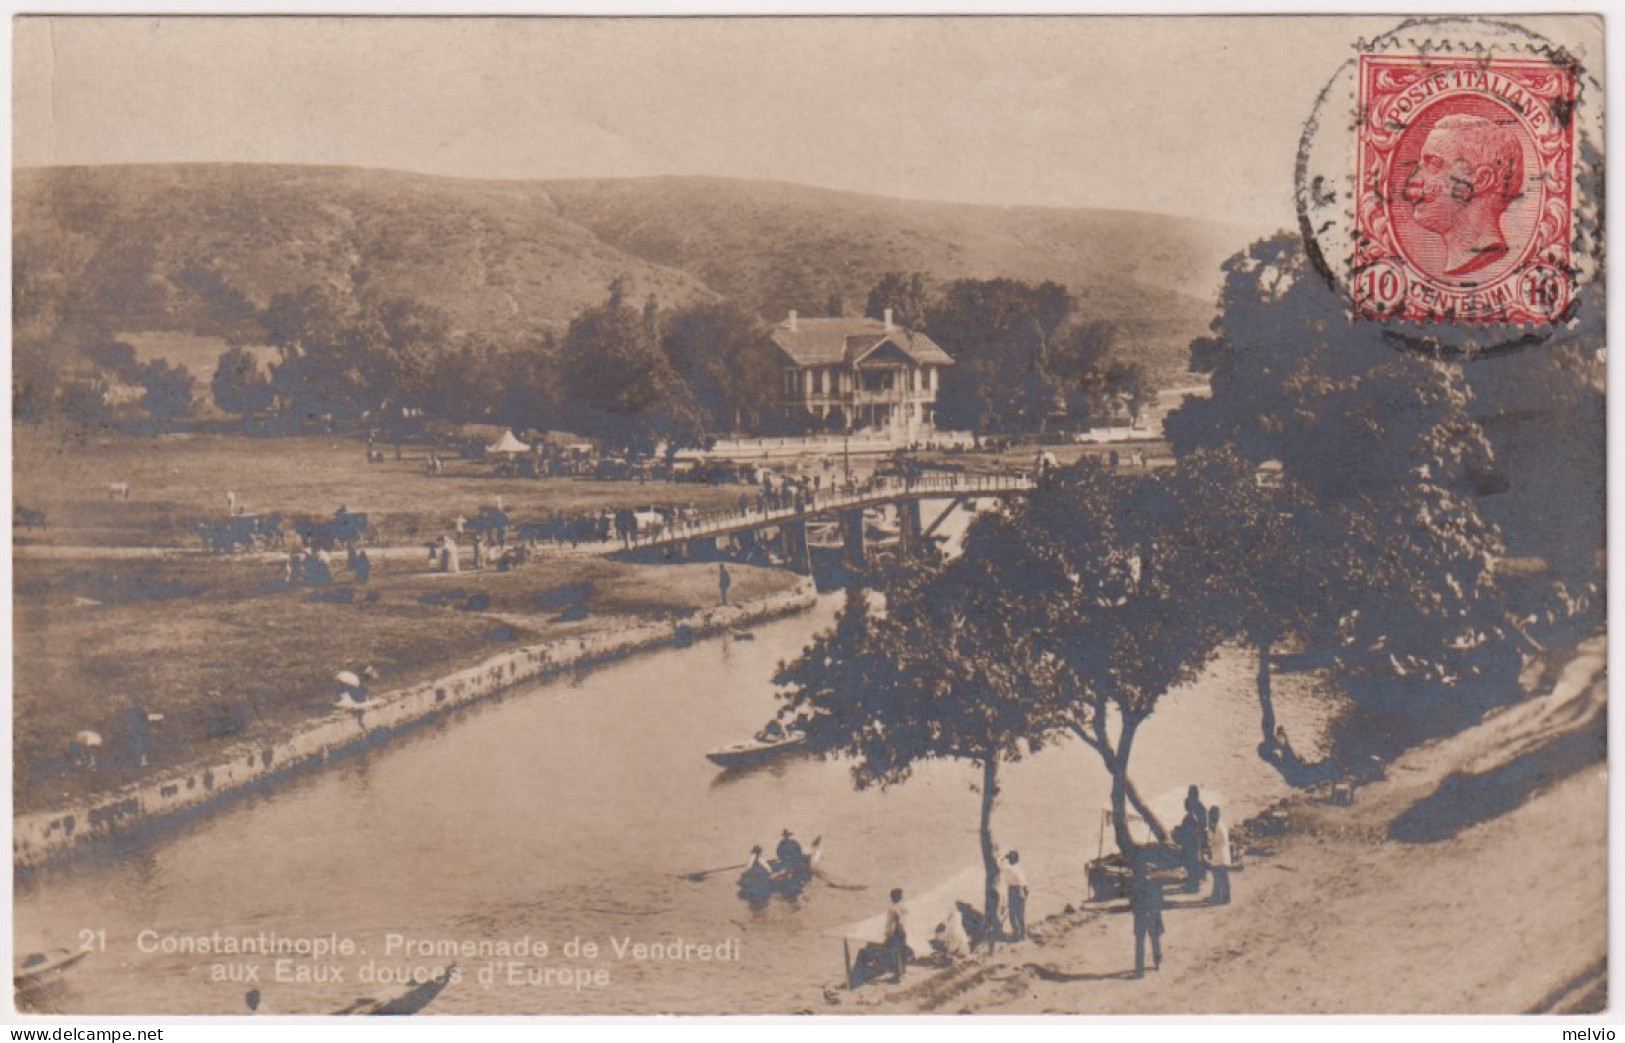 1920-Costantinopoli Promenade De Venndredi Posta Militare 15 Del 7.8 (Turchia) - Dirigibili